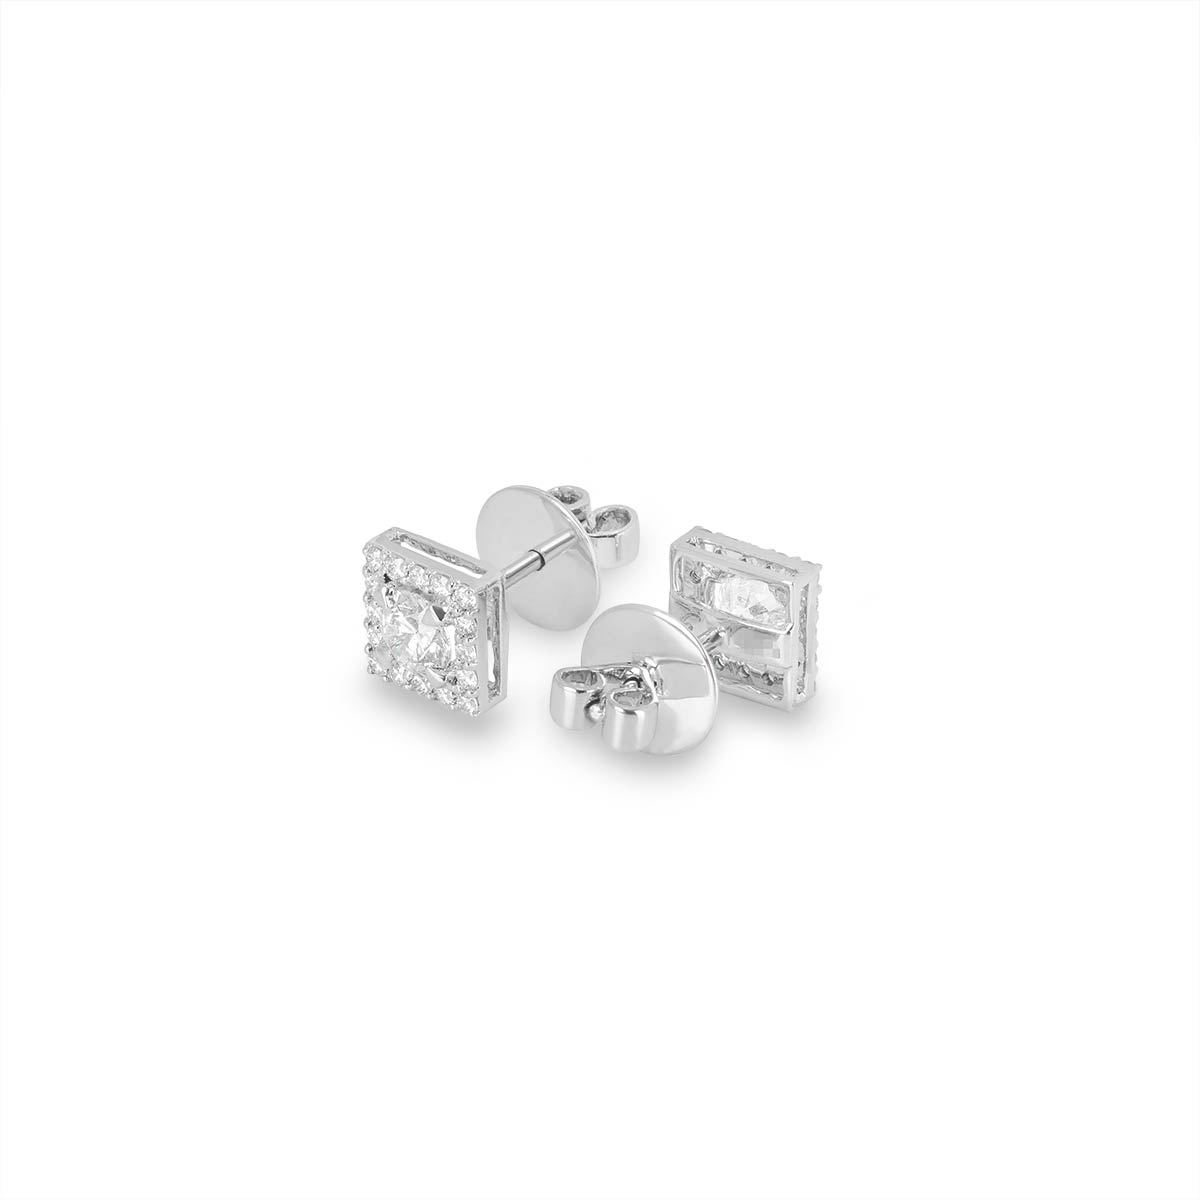 White Gold Diamond Cluster Set Earrings 1.17ct